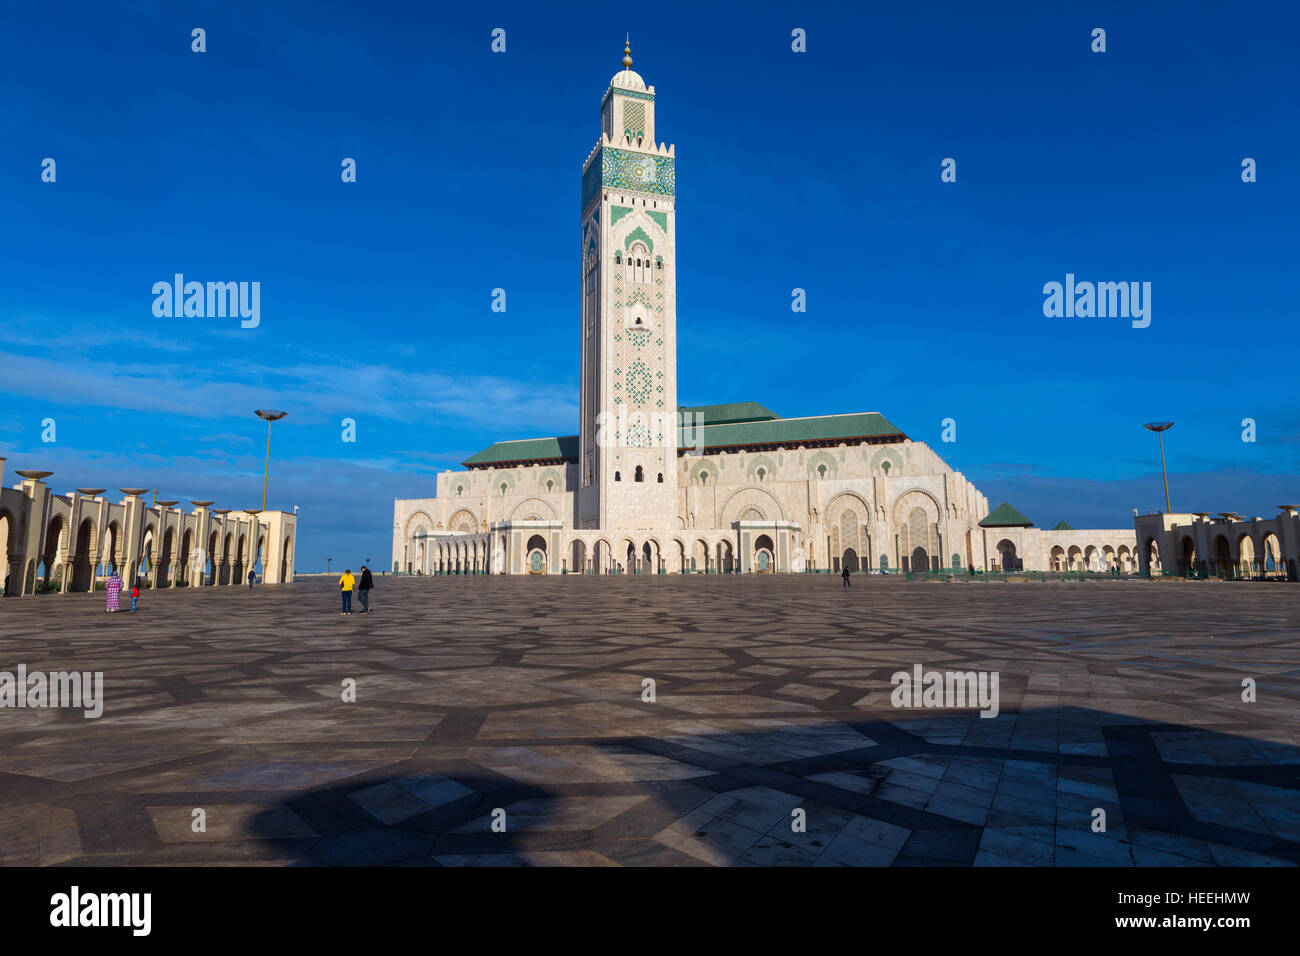 Mosquée Hassan II (1986-1993), Casablanca, Maroc Banque D'Images